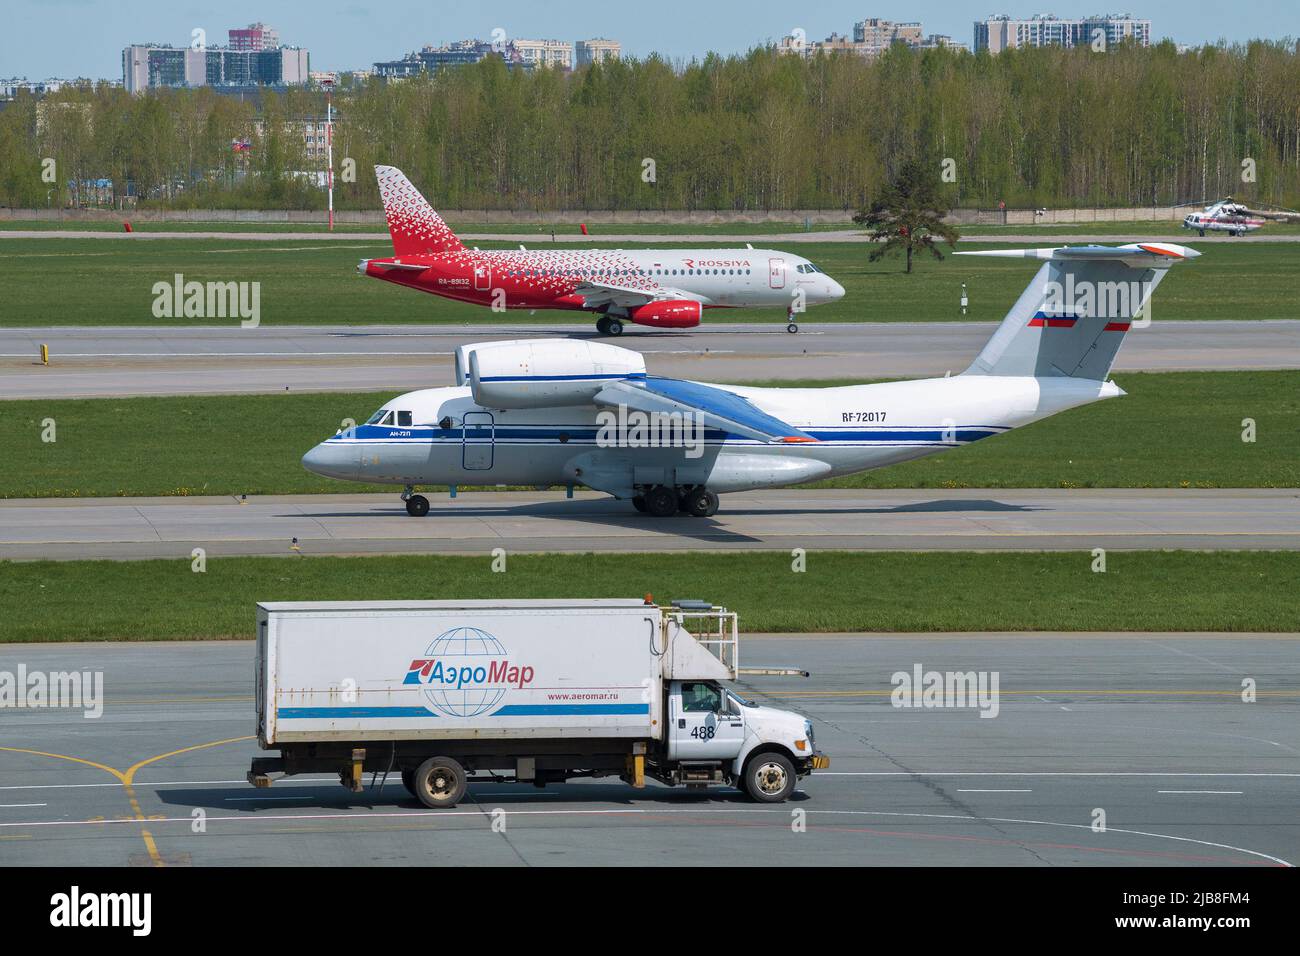 SAINT-PÉTERSBOURG, RUSSIE - 20 MAI 2022 : sur le terrain d'aviation de l'aéroport de Pulkovo le jour de mai Banque D'Images